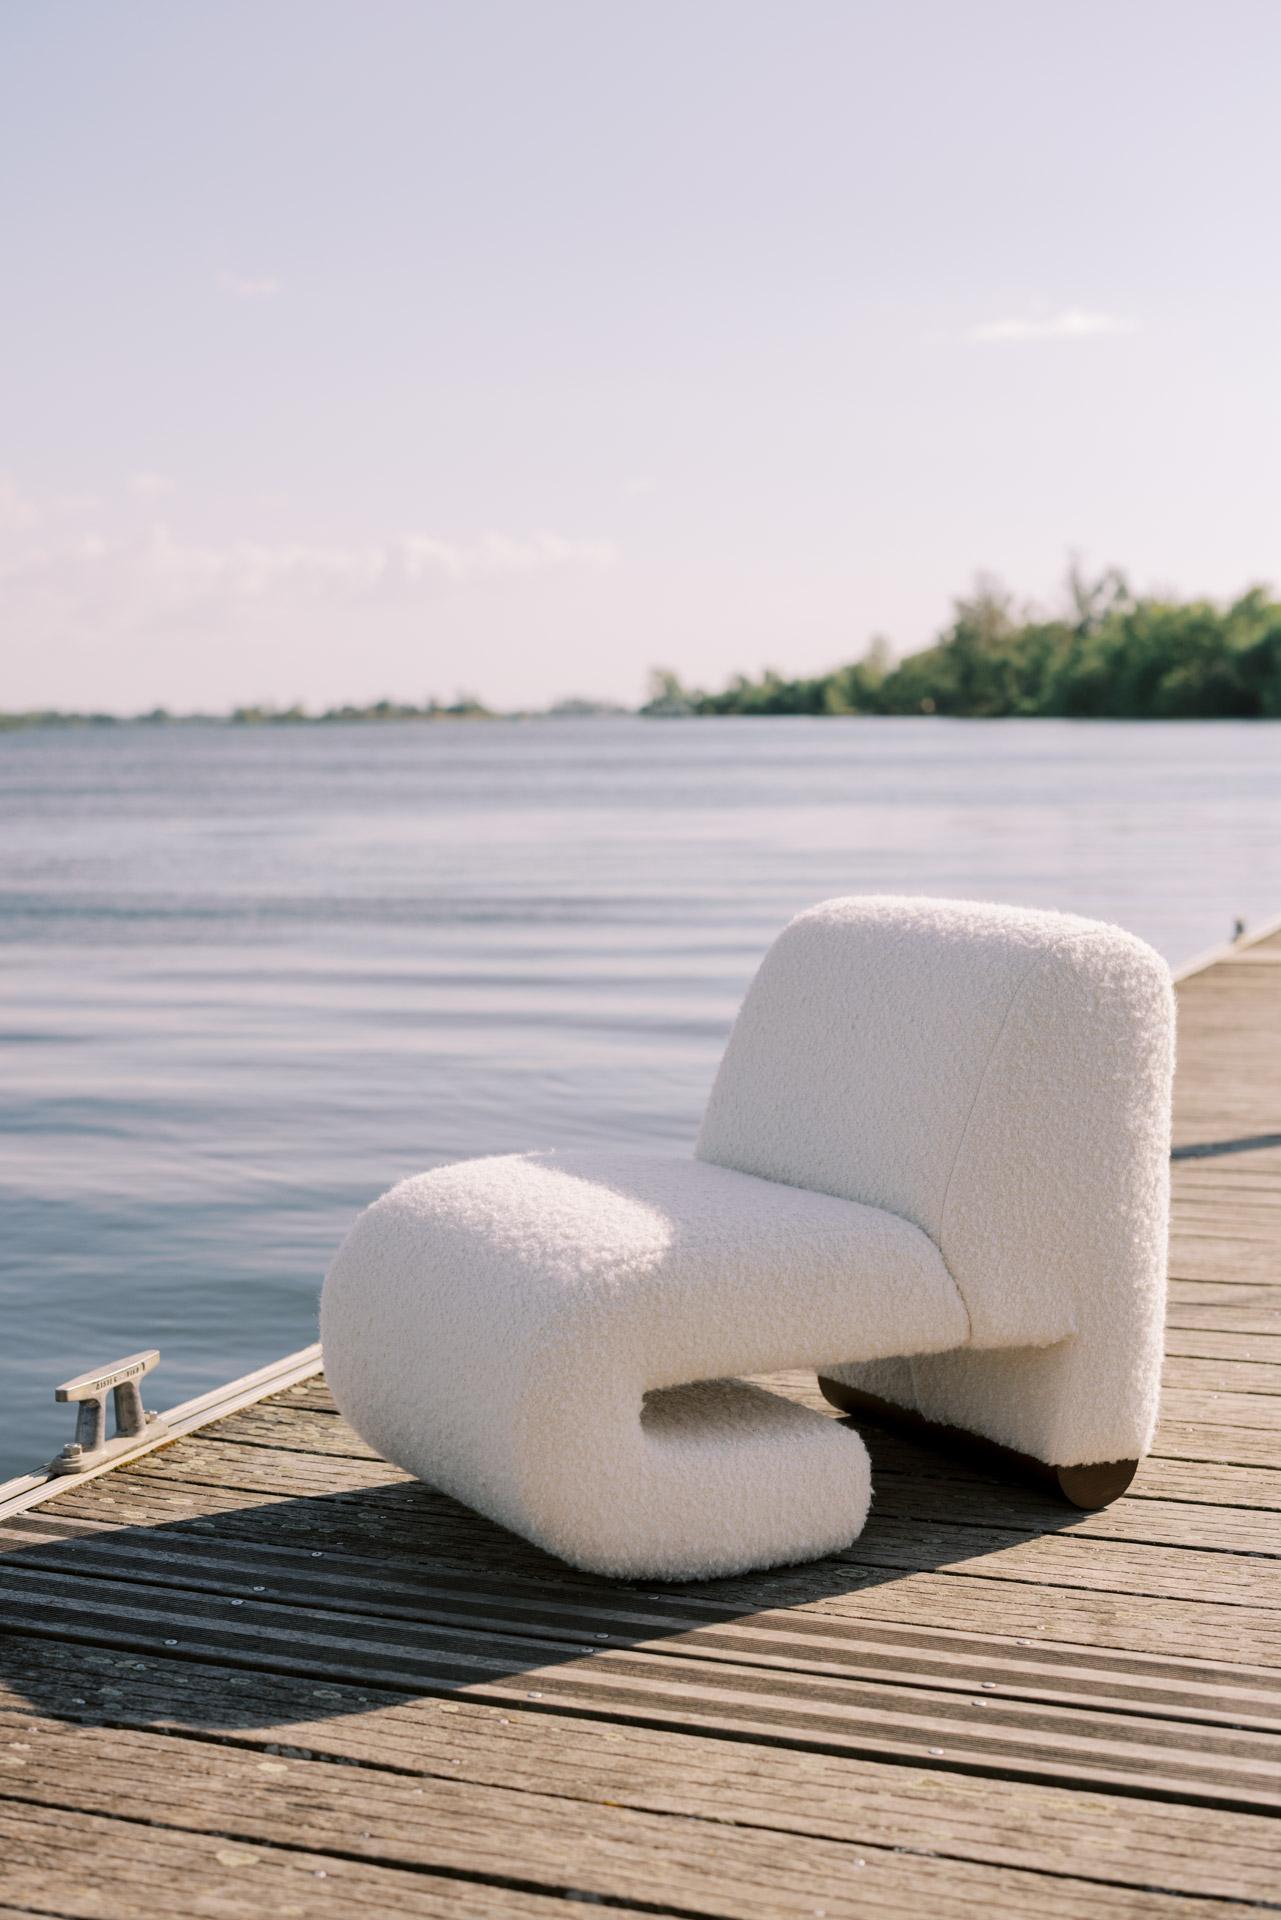 T50 Lounge Chair, Contemporary Collection, handgefertigt in Portugal - Europa von Greenapple.

Der von Rute Martins für die Contemporary Collection entworfene Sessel T50 ist eine Hommage an das Retro-Design der 1950er Jahre, einer Zeit, in der die